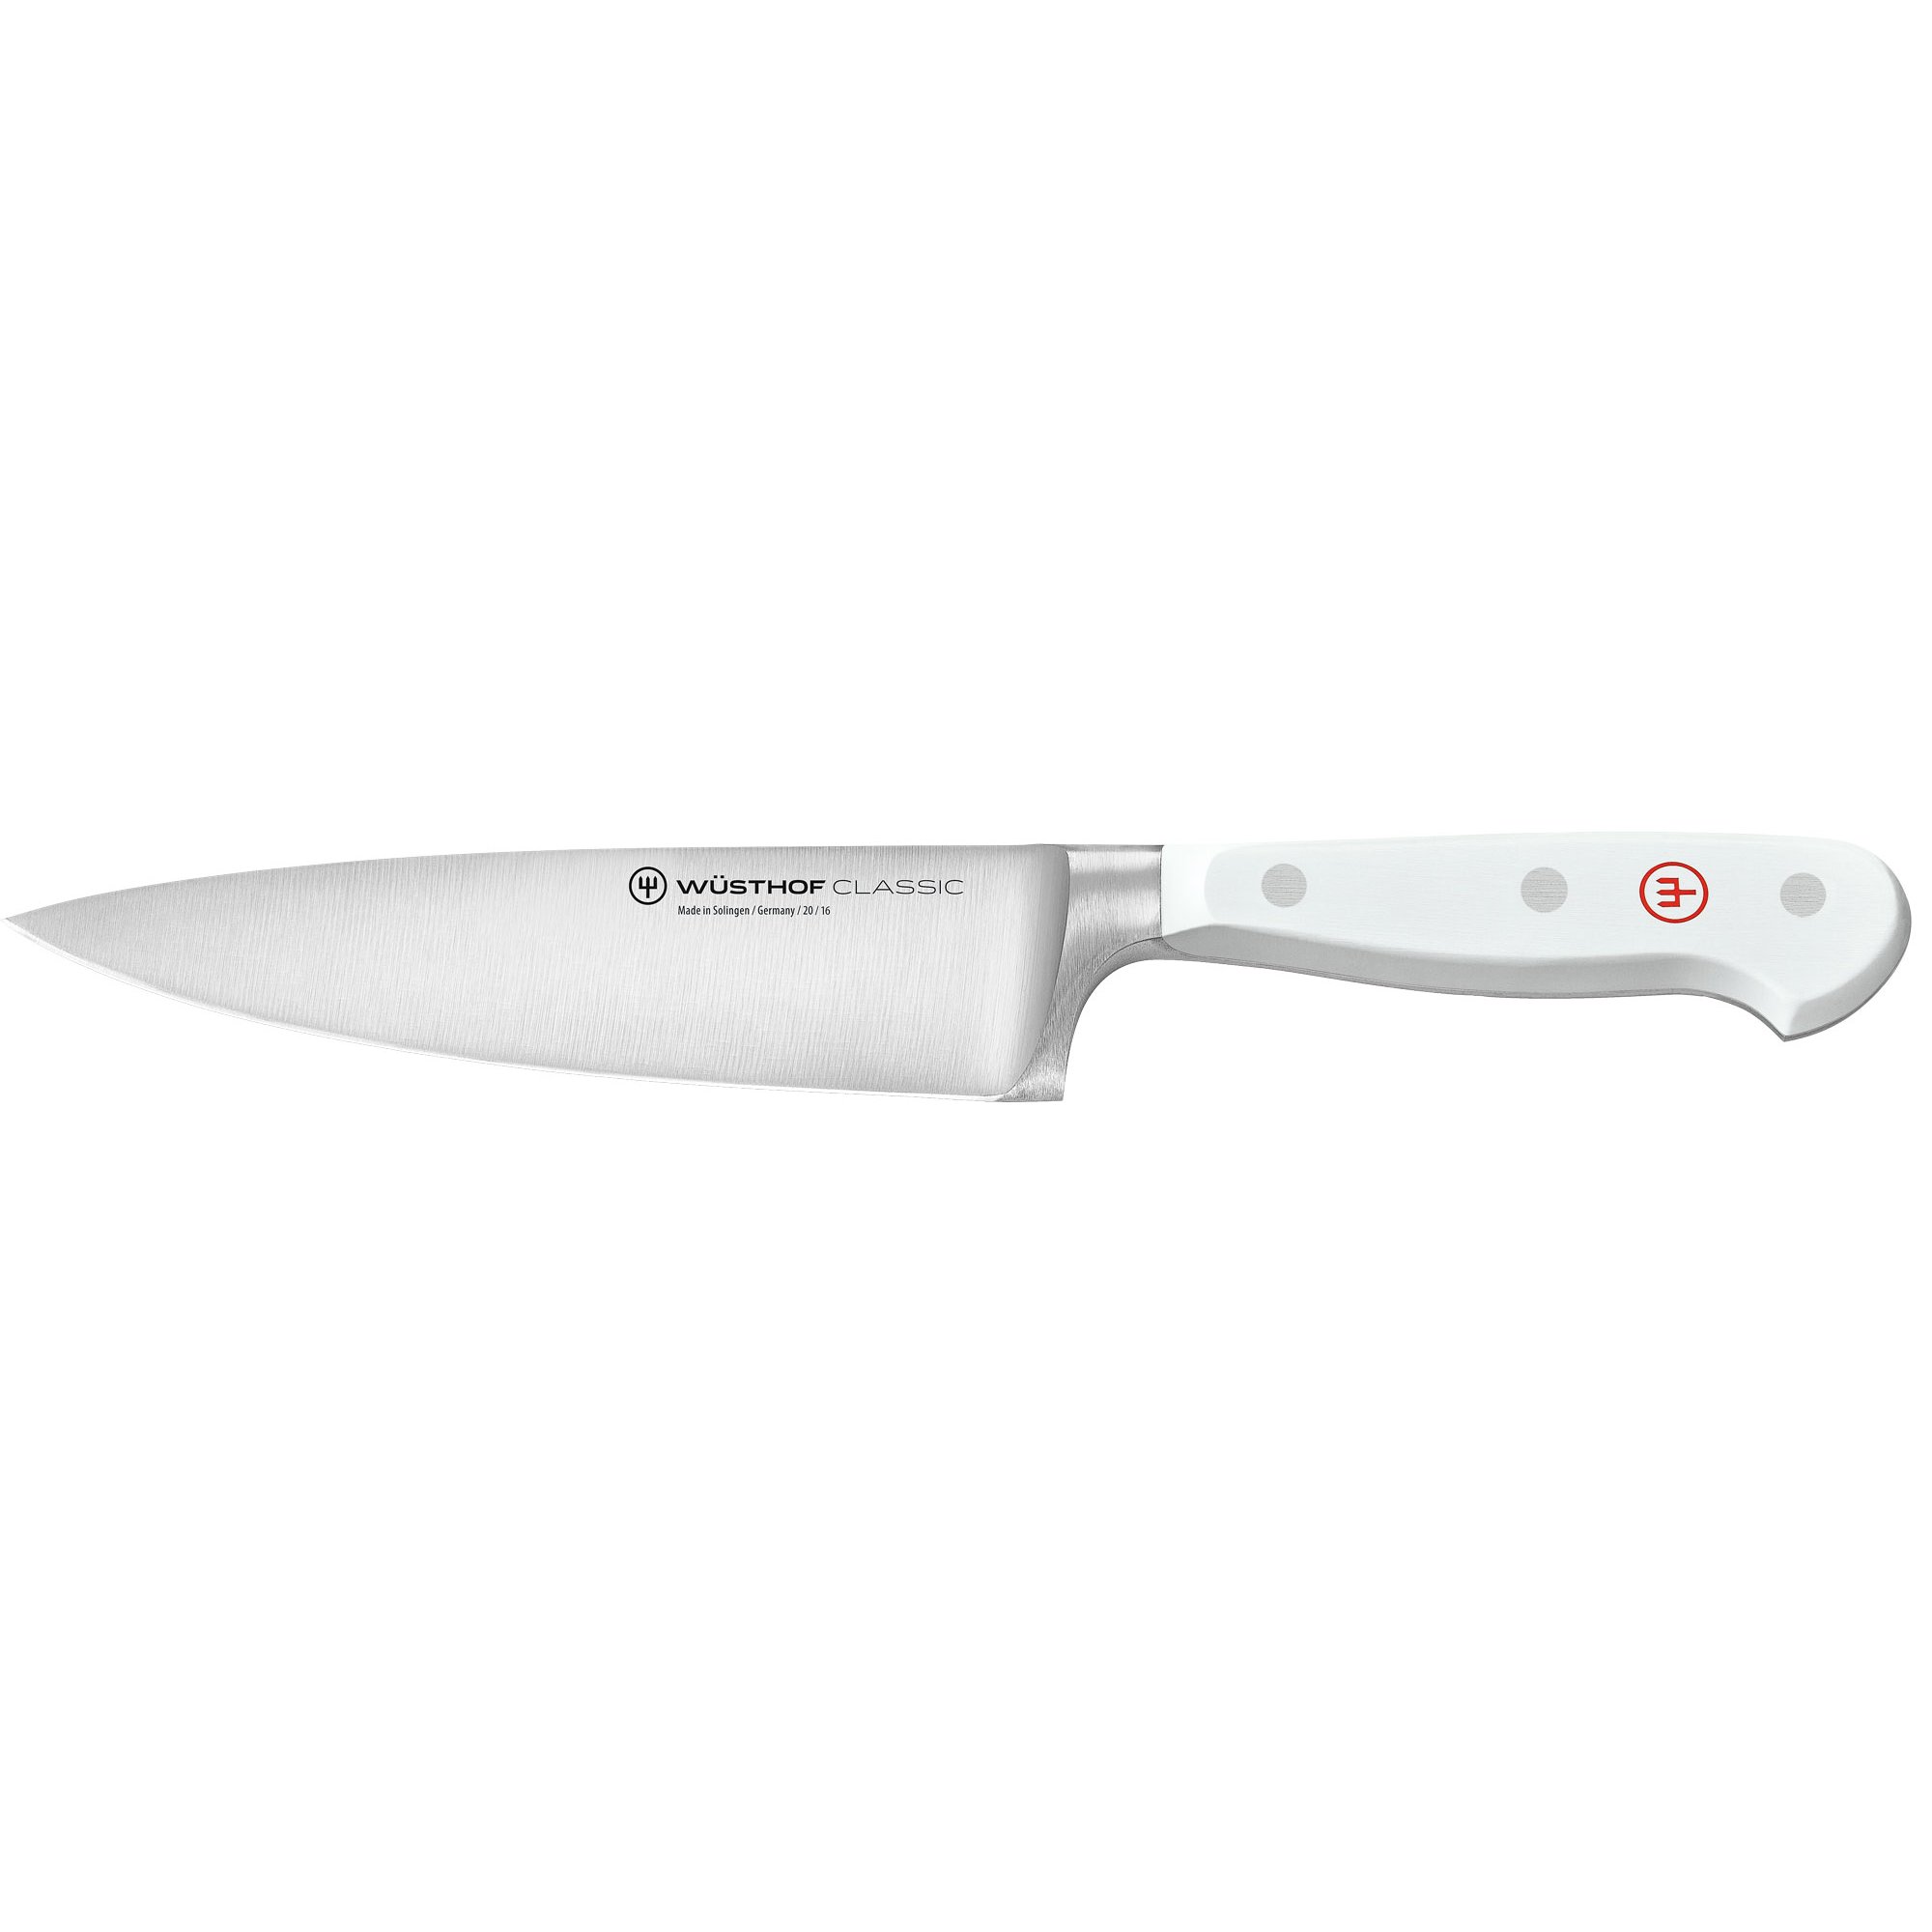 Wüsthof Classic hvid kokkekniv 16 cm.